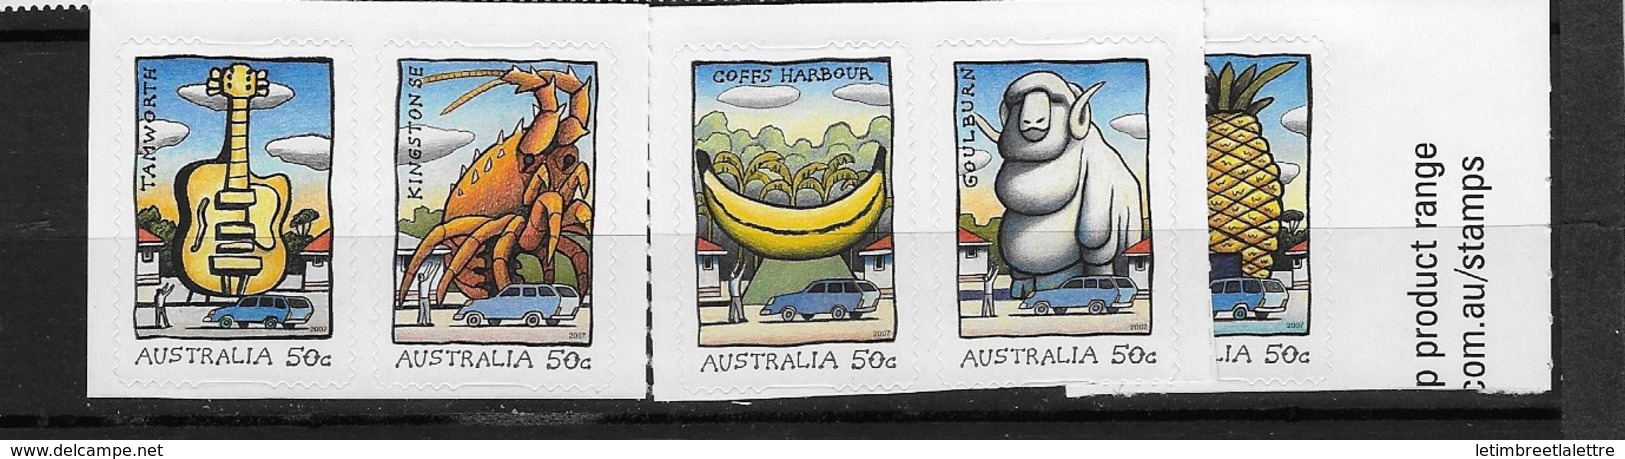 Australie N°2728 à 2732** Autoadhésifs - Mint Stamps